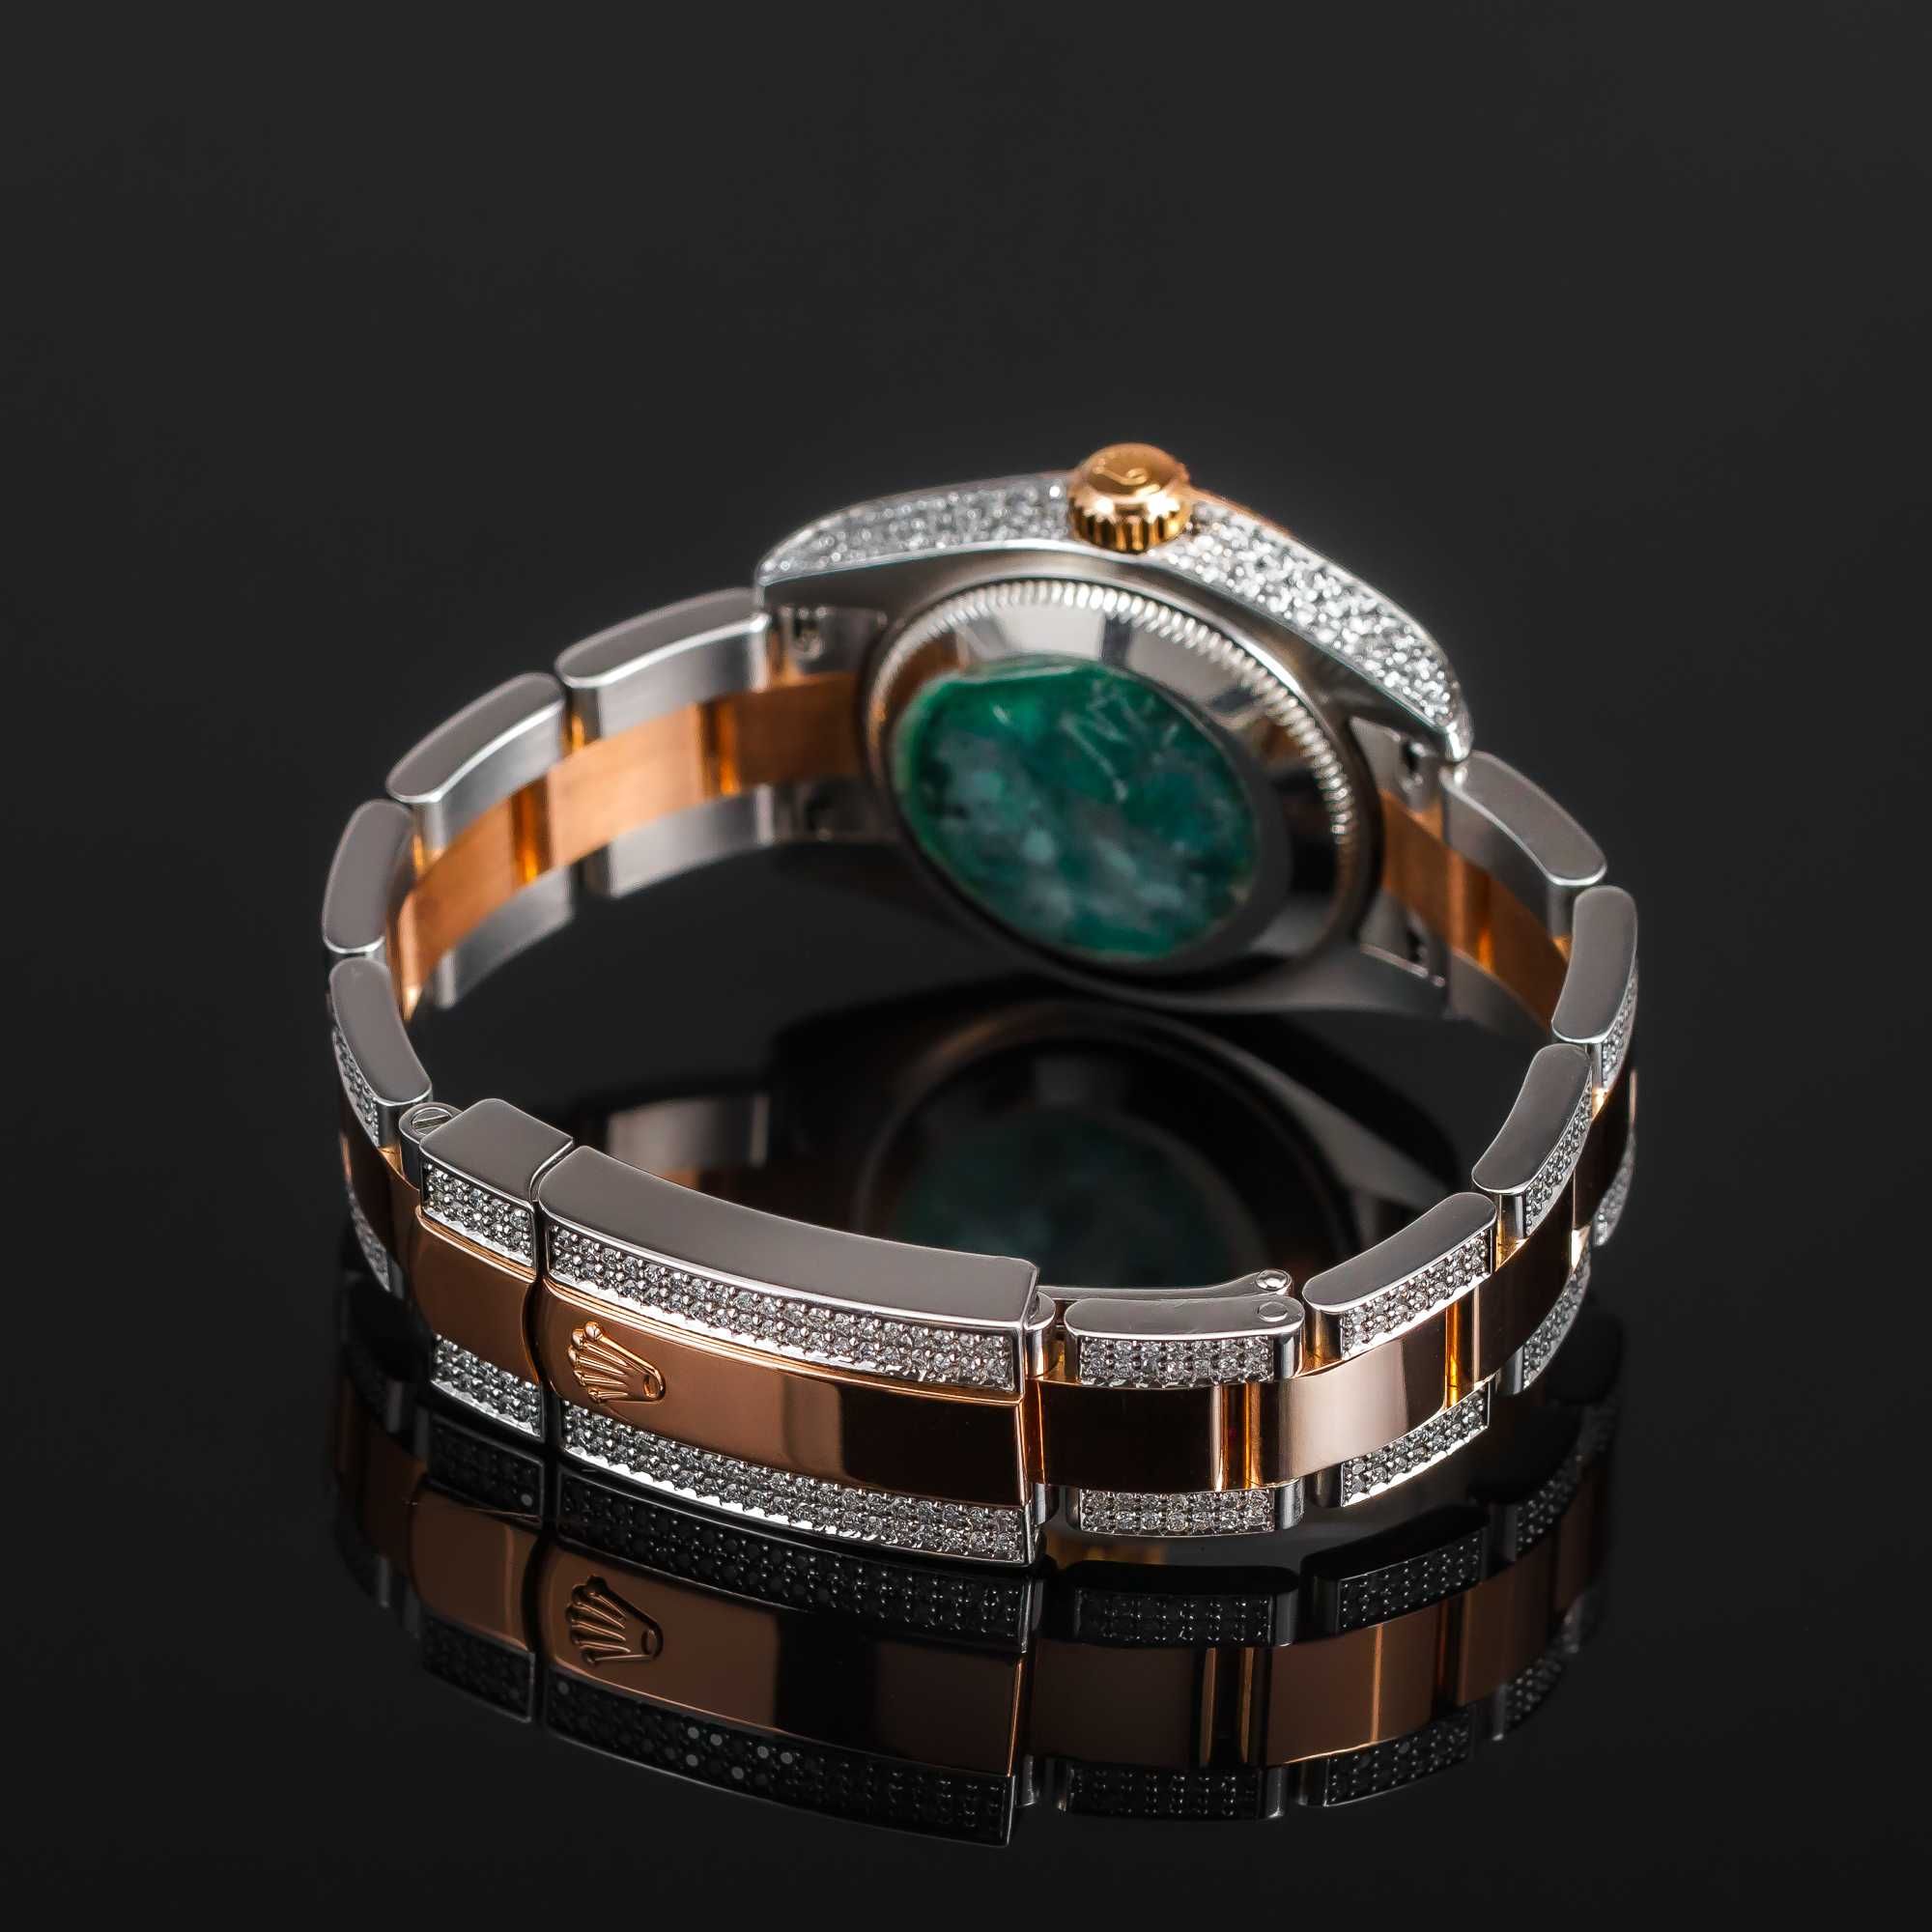 Piękny diamentowy zegarek ROLEX Lady Datejust